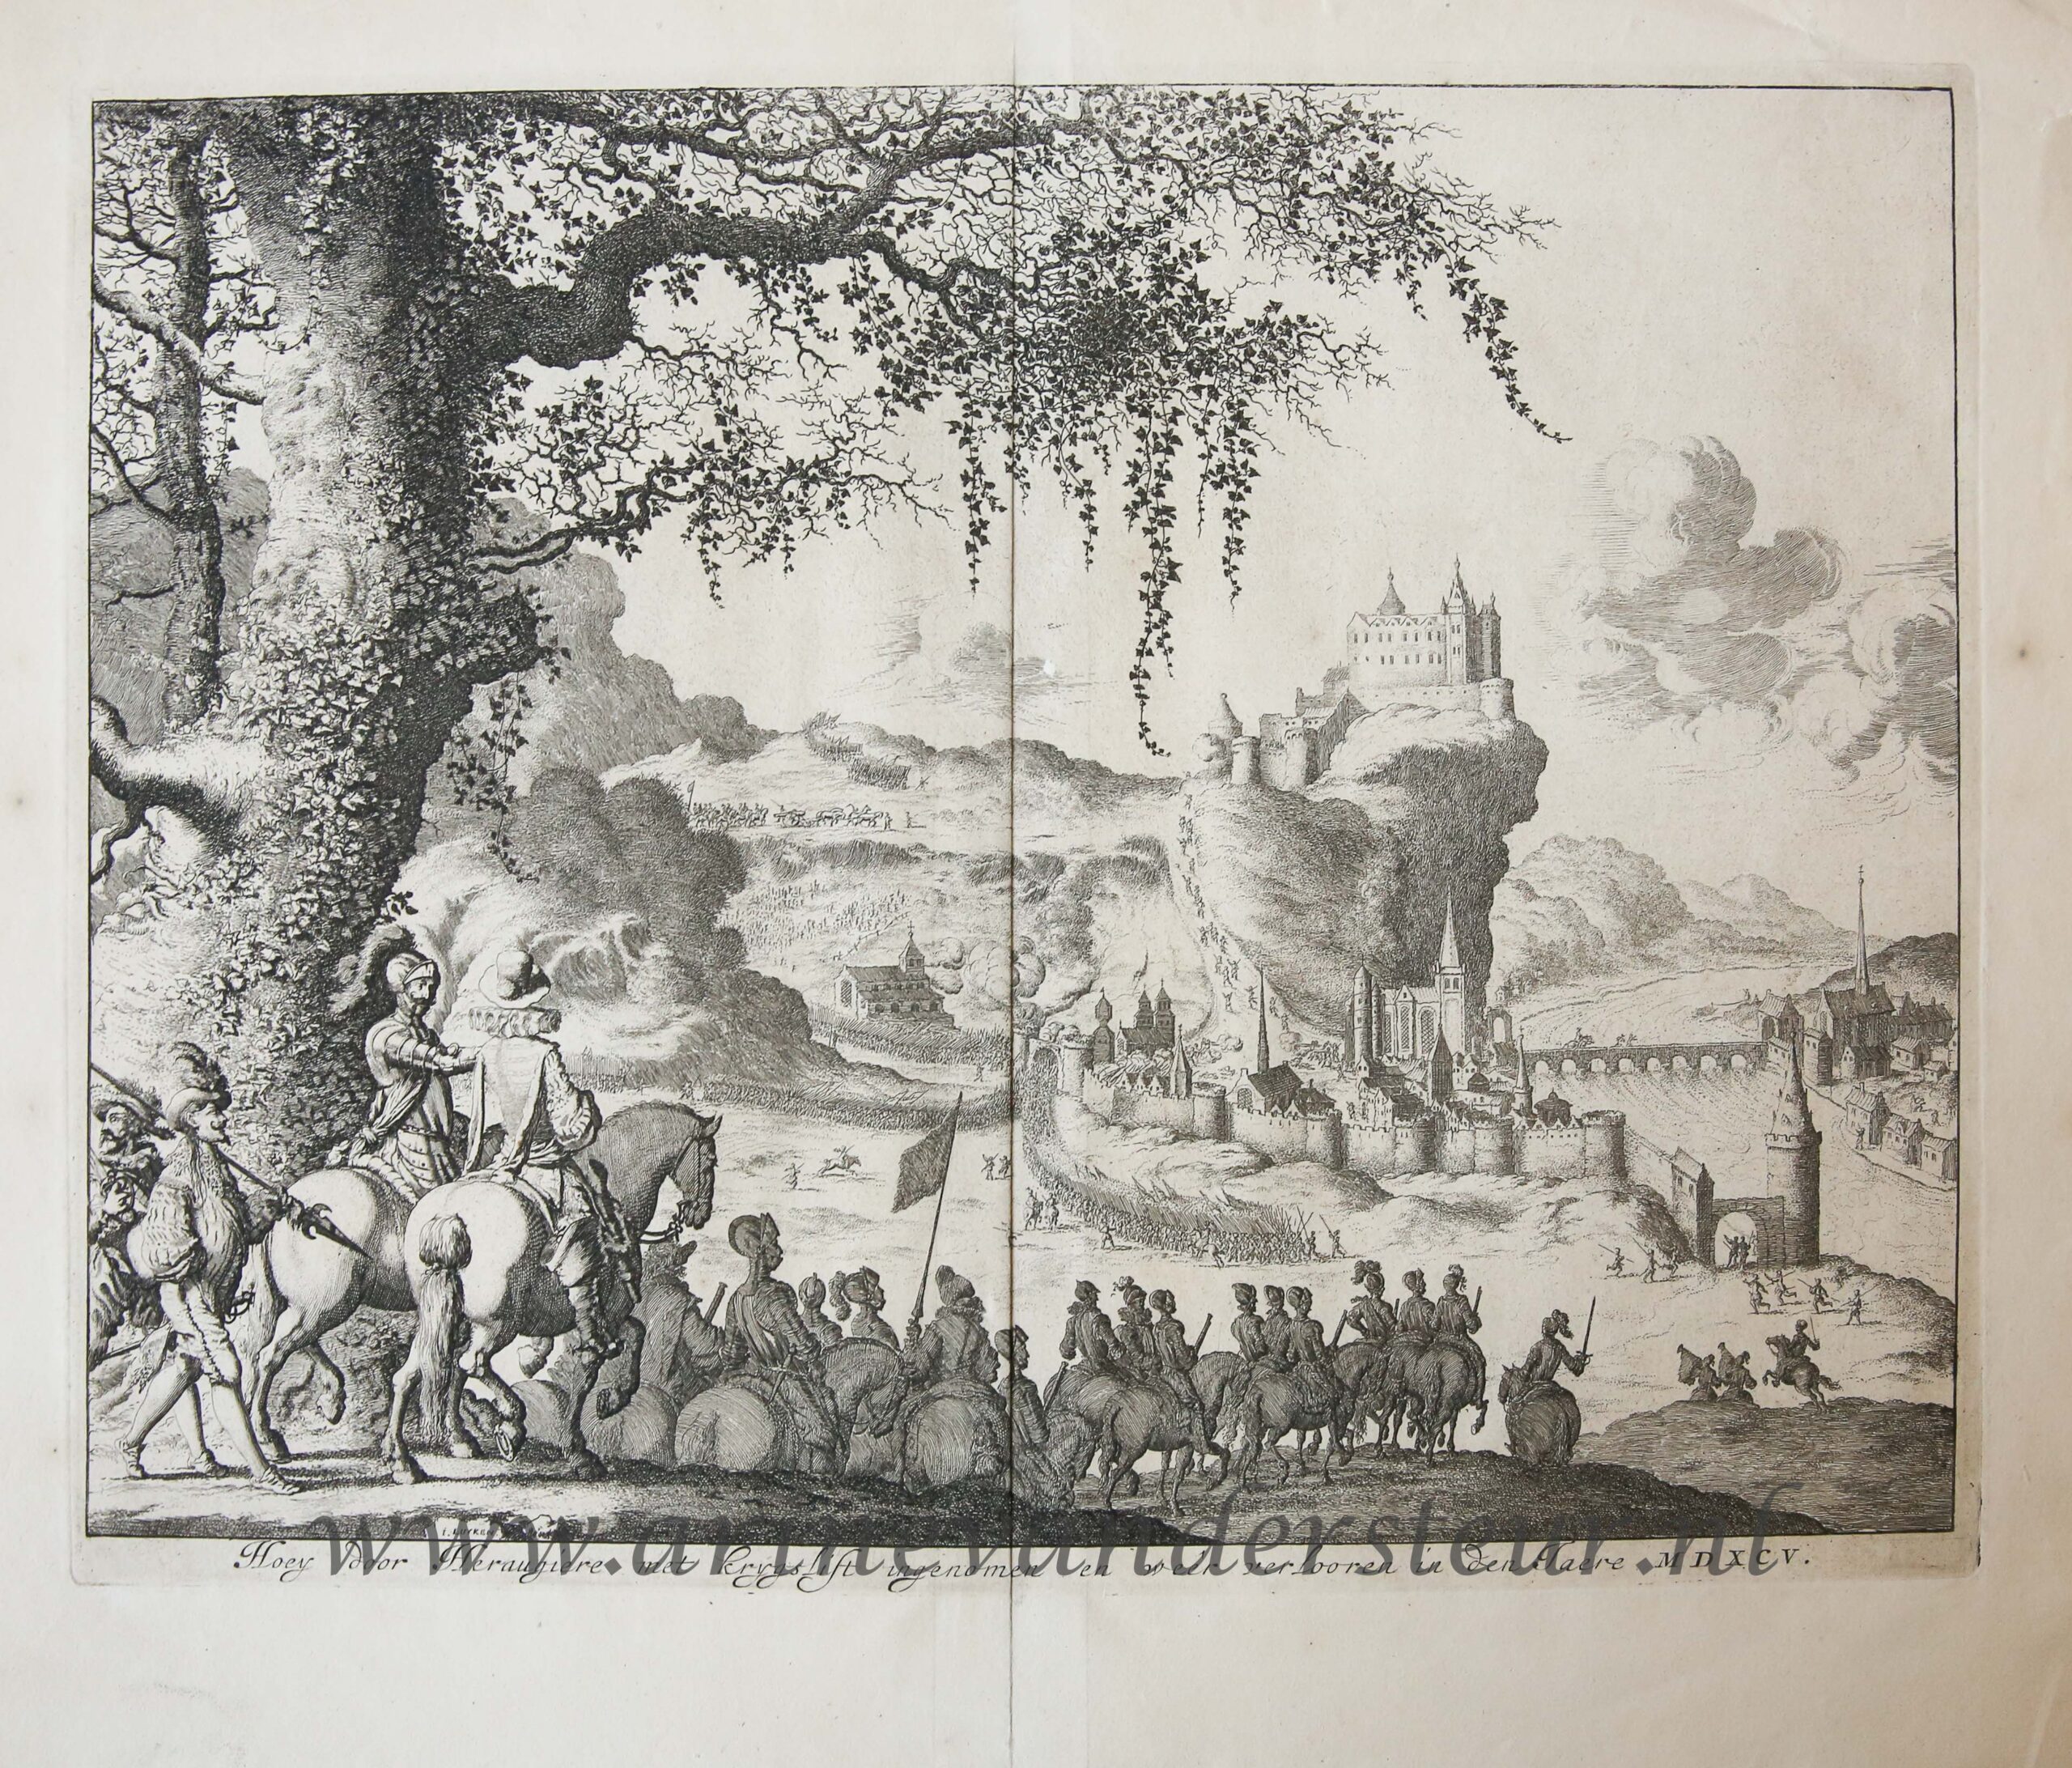 [Antique etching, ets] J. Luyken, Hoey door Heraugiere met krygslift ingenomen en weer verlooren in den jaere MDXCV, published 1684.